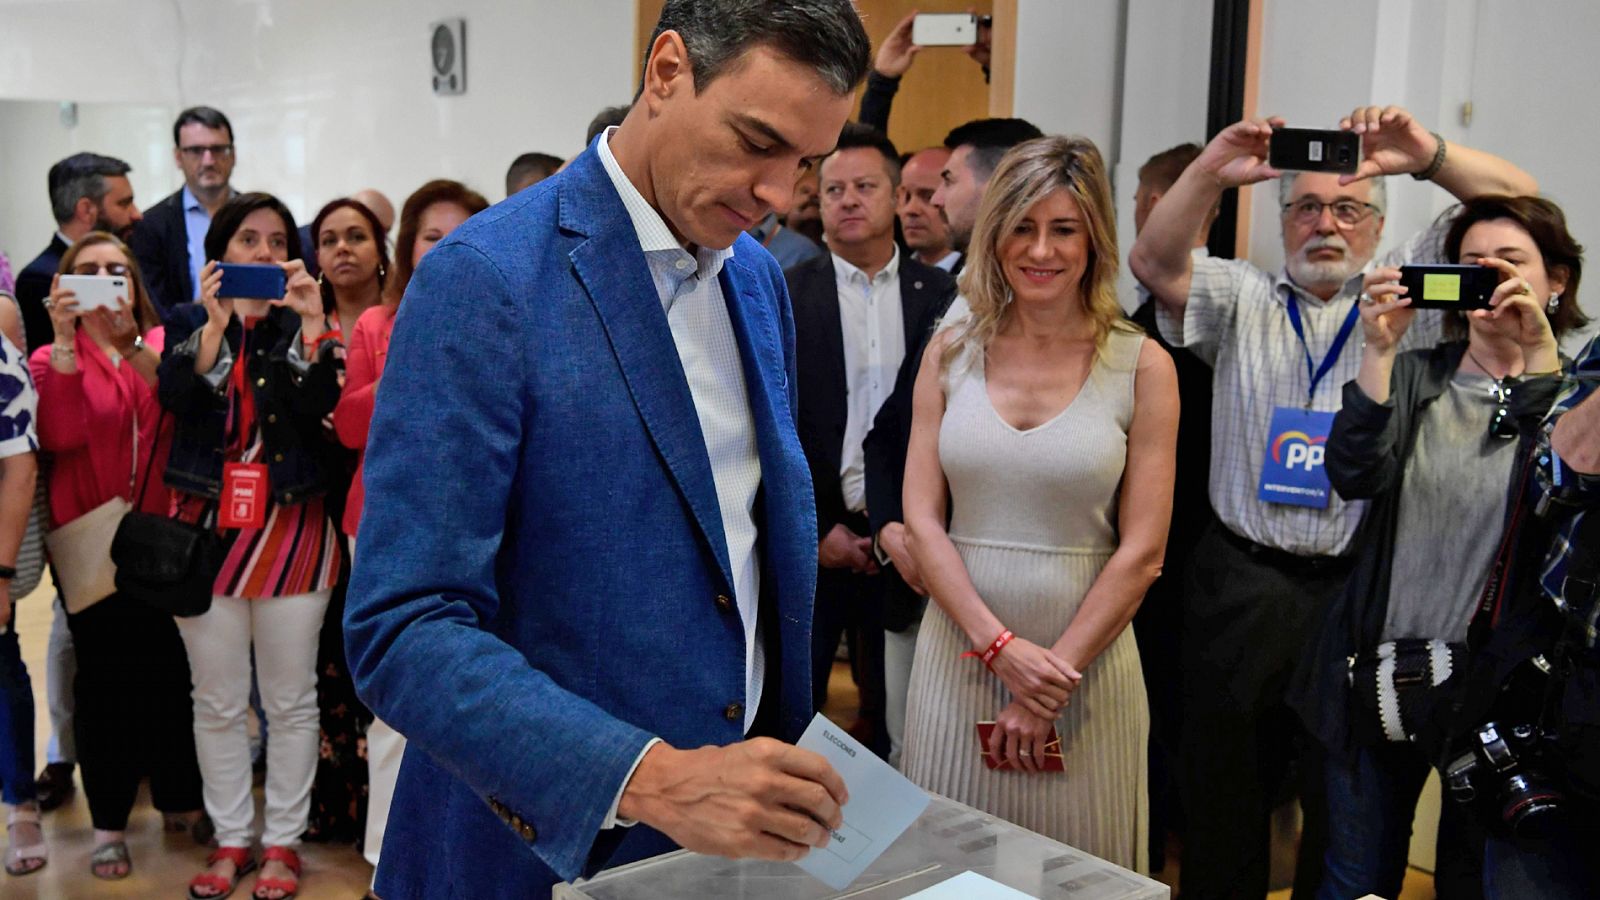 Elecciones 26M: Sánchez anima a abrir un "horizonte de estabilidad política" - RTVE.es